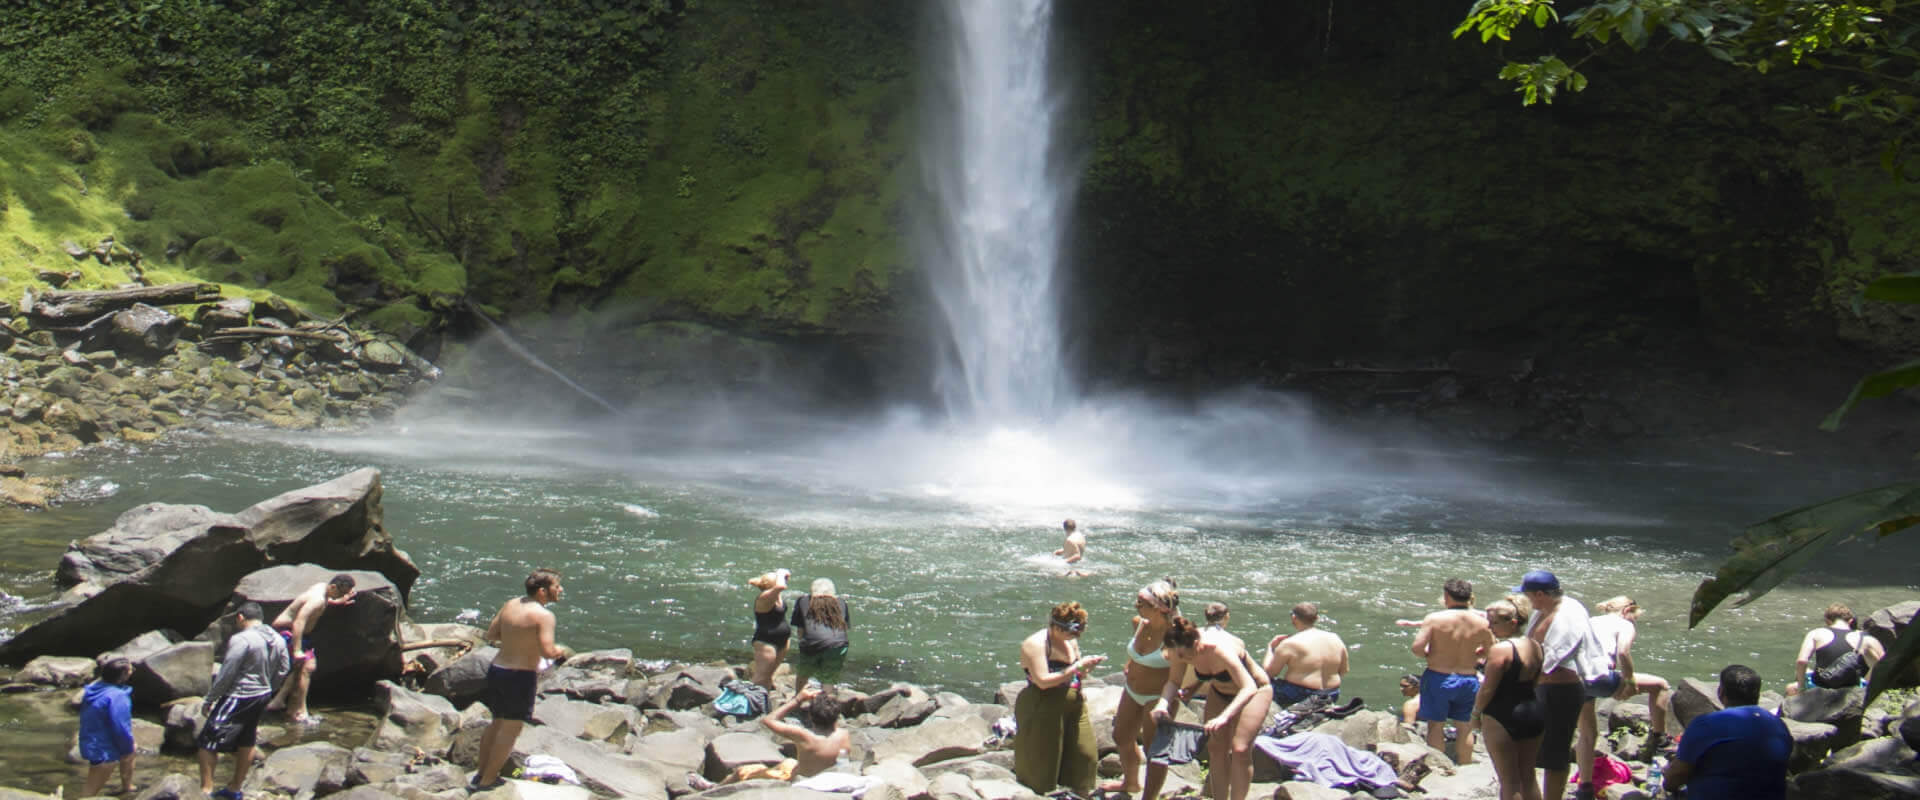 Catarata de La Fortuna, Costa Rica